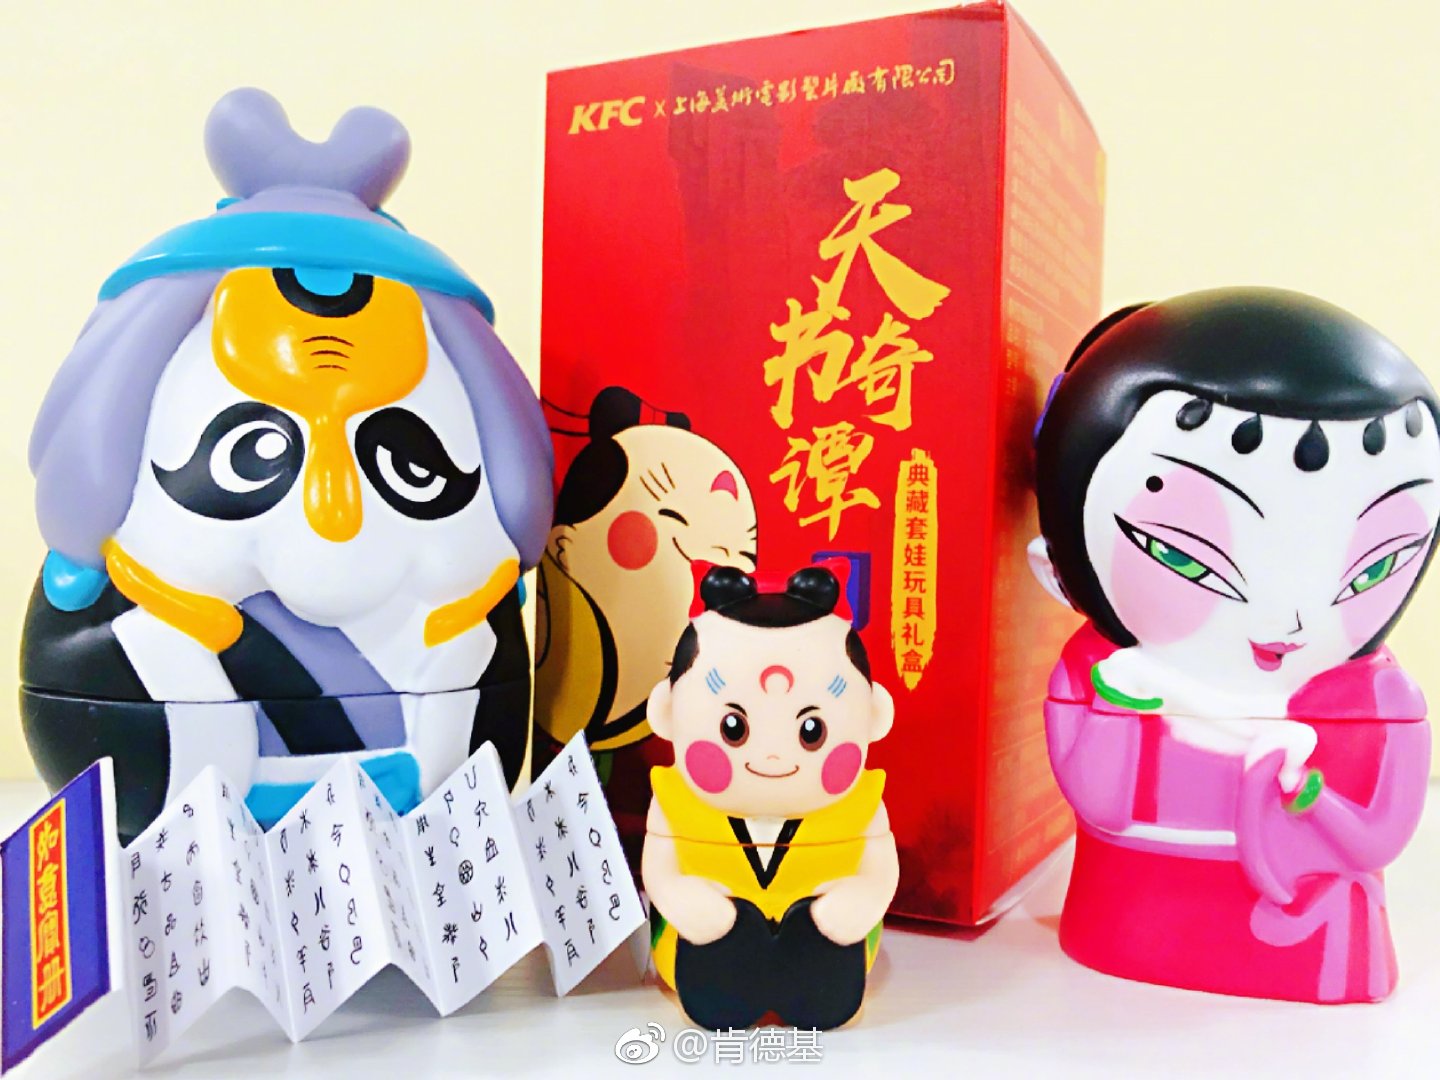 KFC携手上海美影 推出《天书奇谭》典藏套娃玩具礼盒